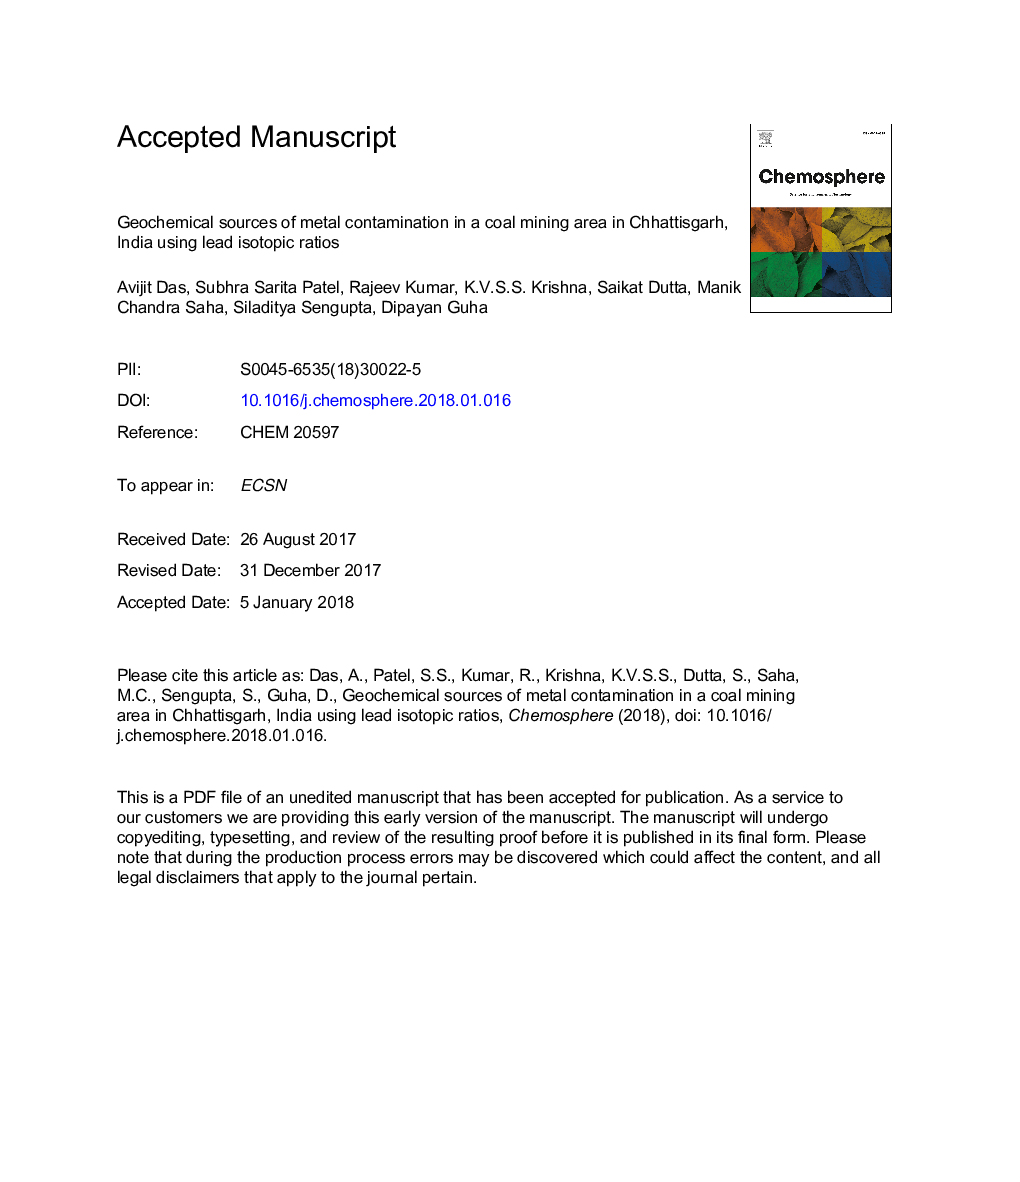 منابع ژئوشیمیایی آلودگی فلزات در ناحیه استخراج ذغال سنگ در چاتتسگره، هند با استفاده از نسبت ایزوتوپهای سرب 